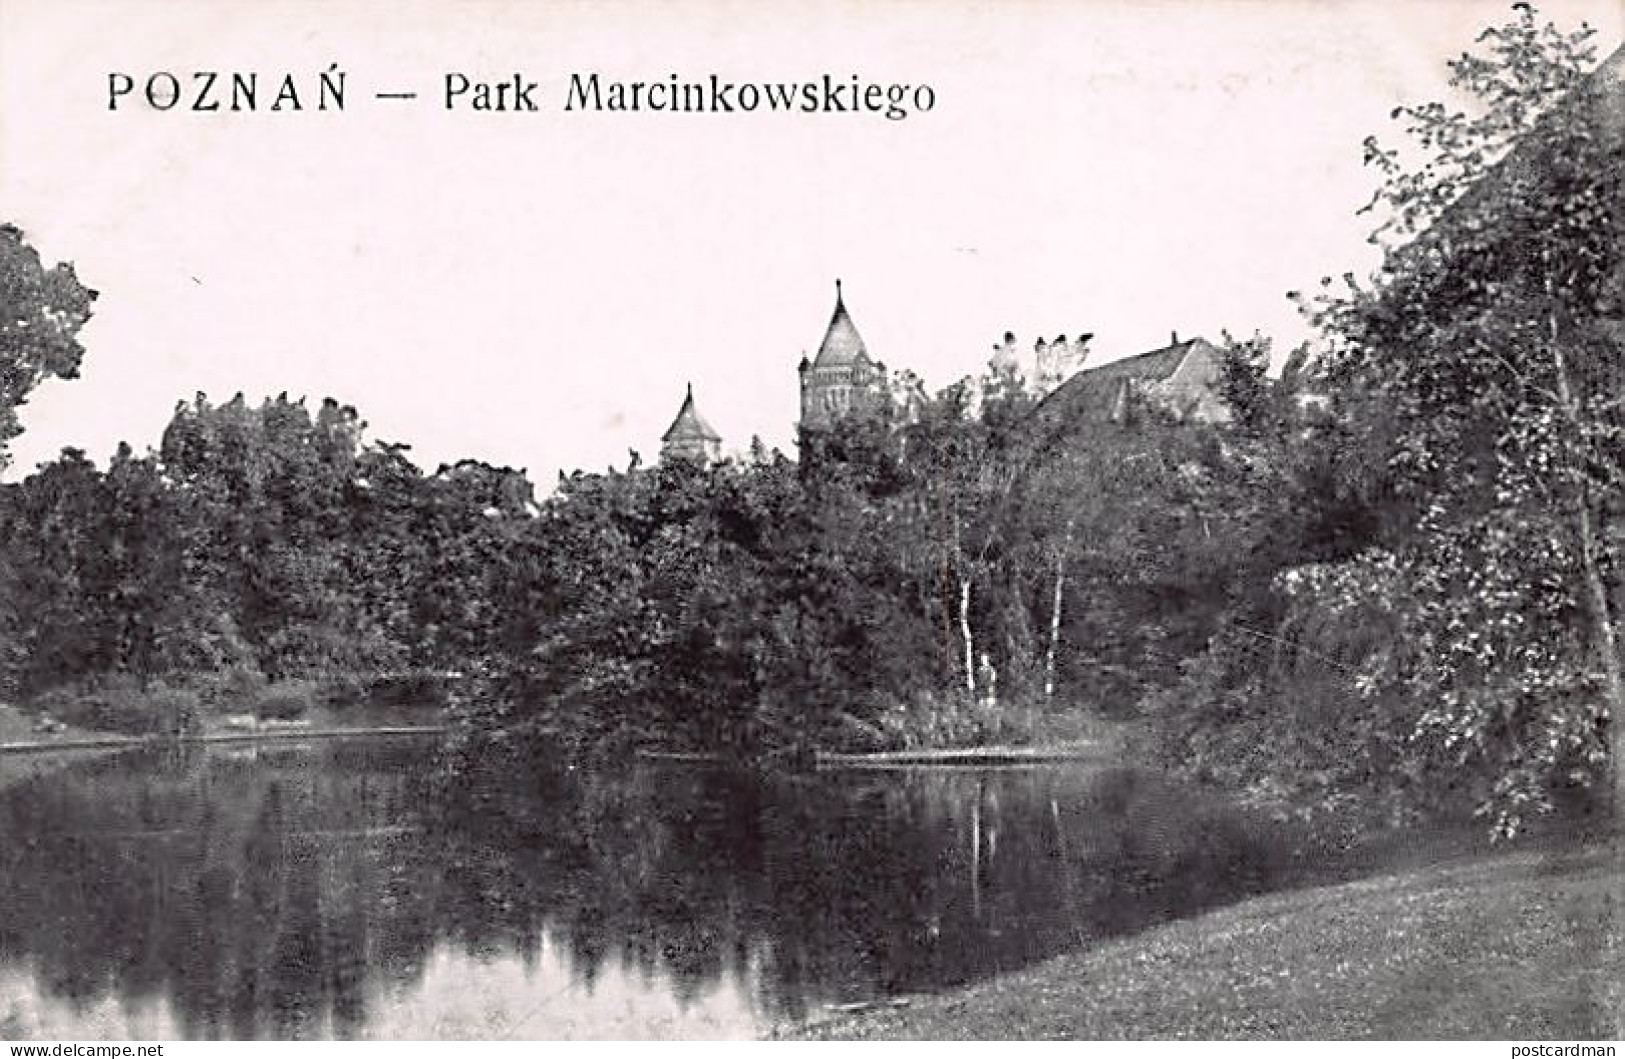 Poland - POZNAŃ - Park Marcinkowskiego - Poland